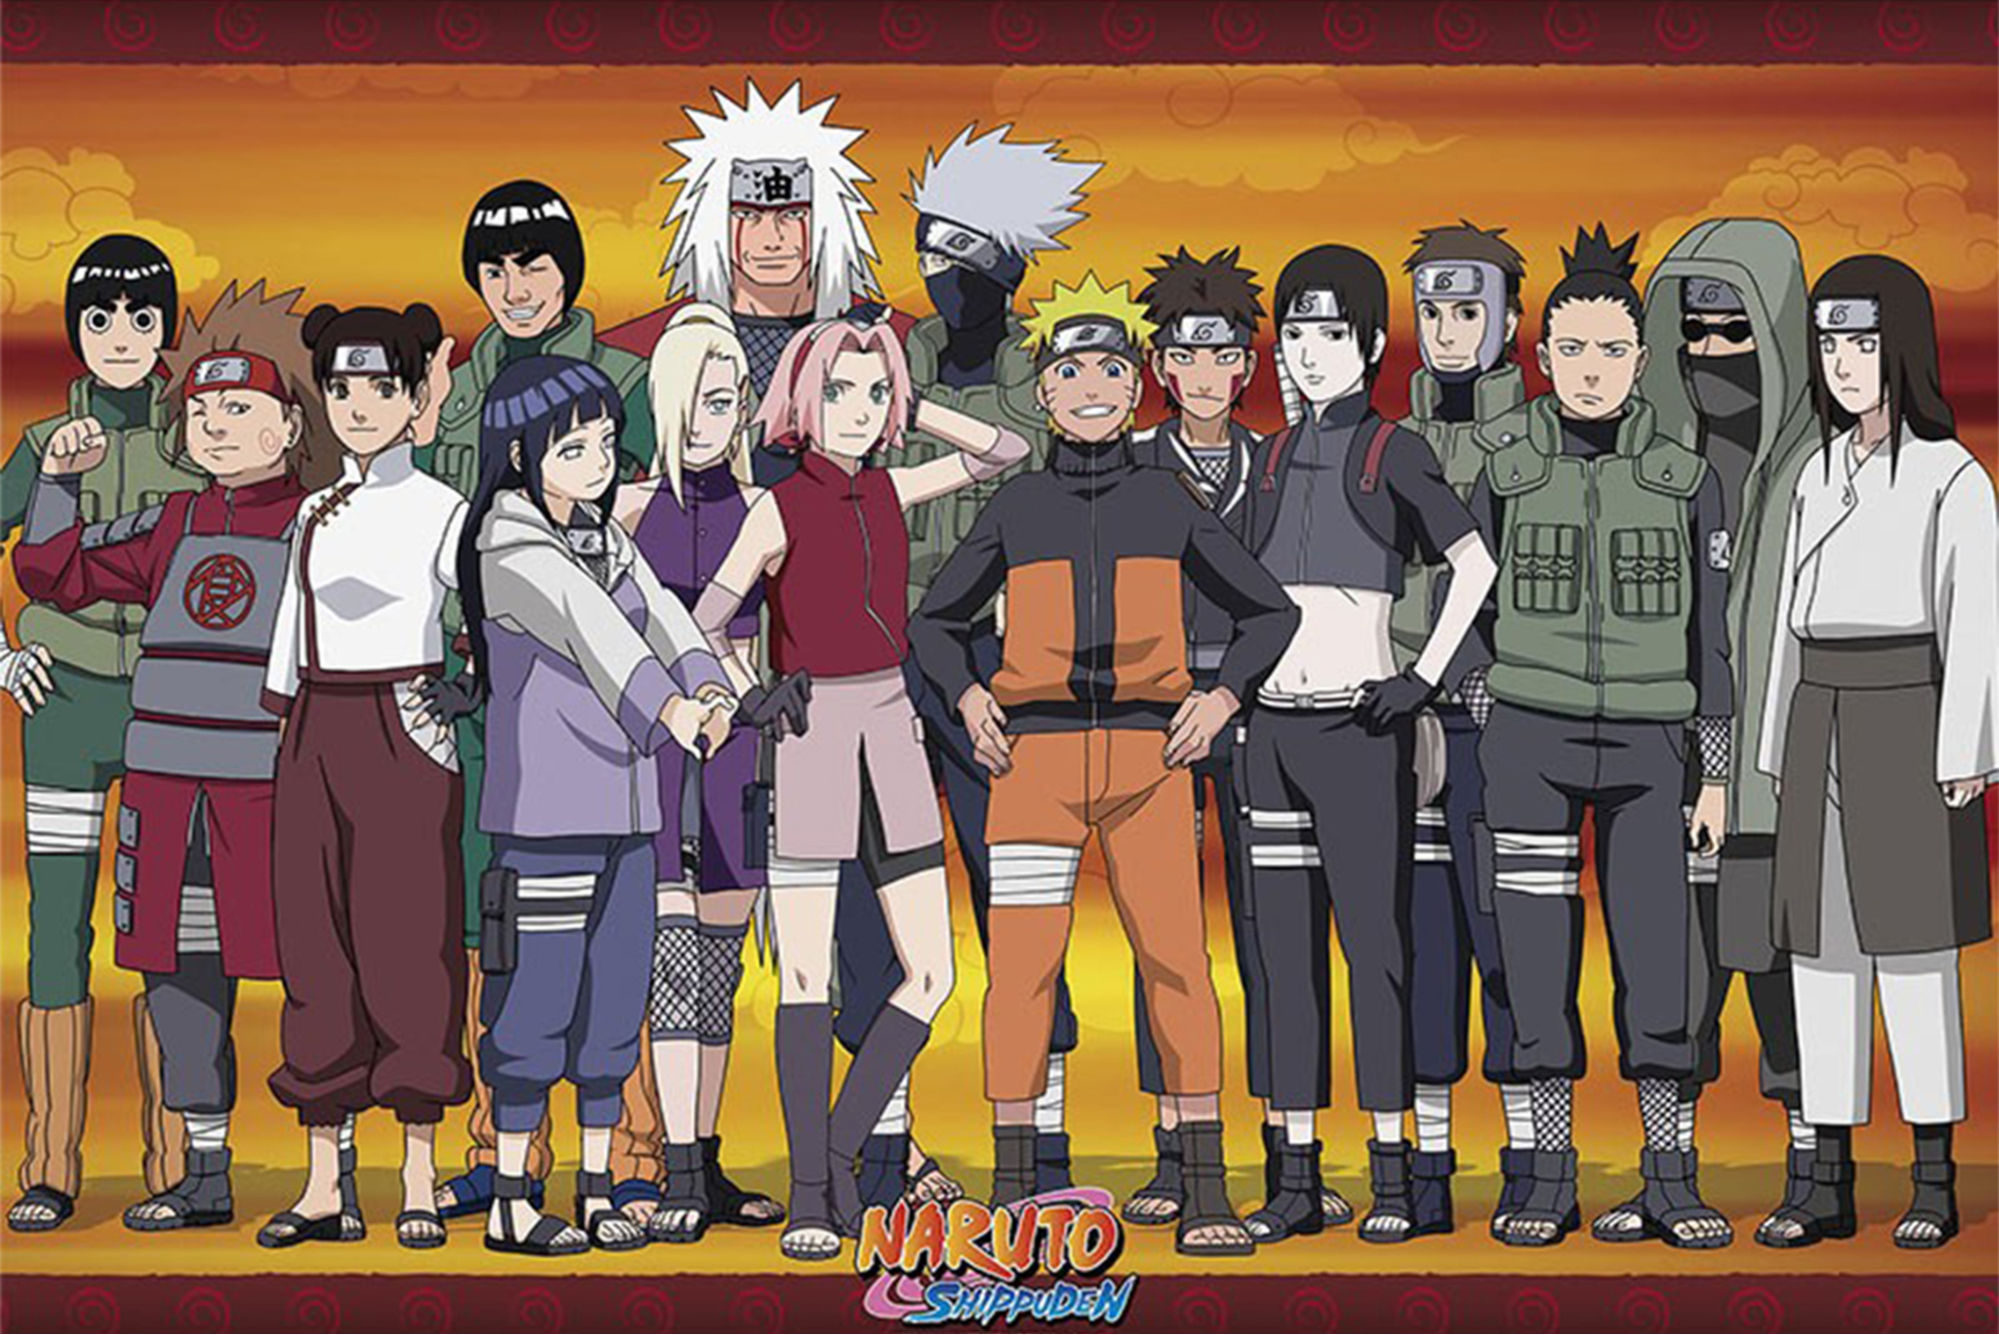 5. Naruto